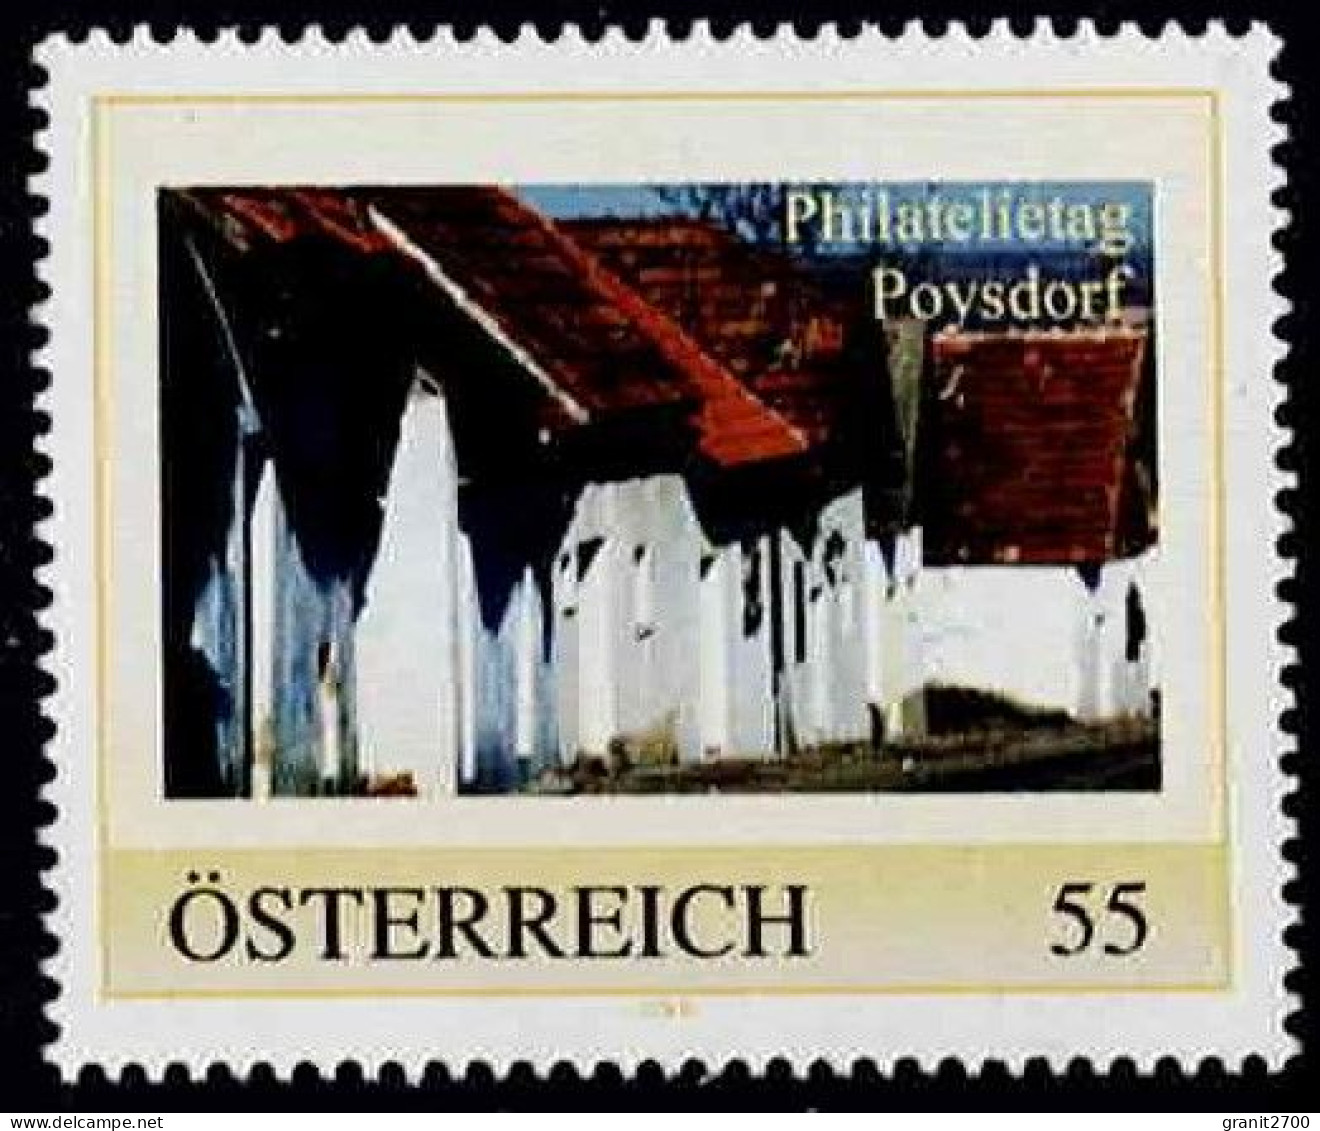 PM  Philatelietag Poysdorf  Ex Bogen Nr.  8025518  Vom 12.1.2010  Postfrisch - Personnalized Stamps